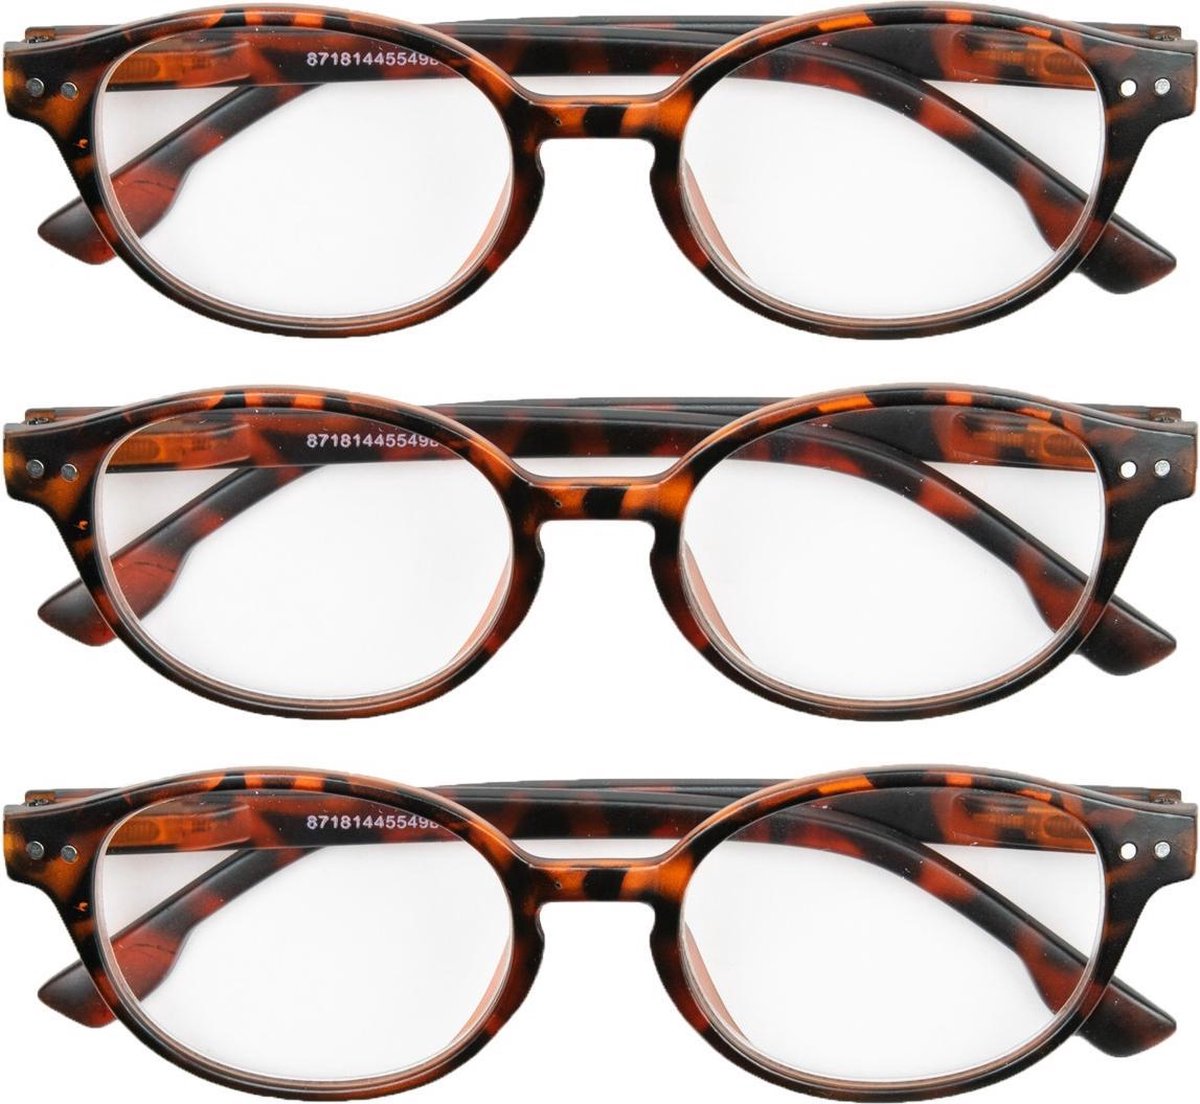 Leesbril mat havanna rond +2,00 - 3 stuks - leesbrillen bruin